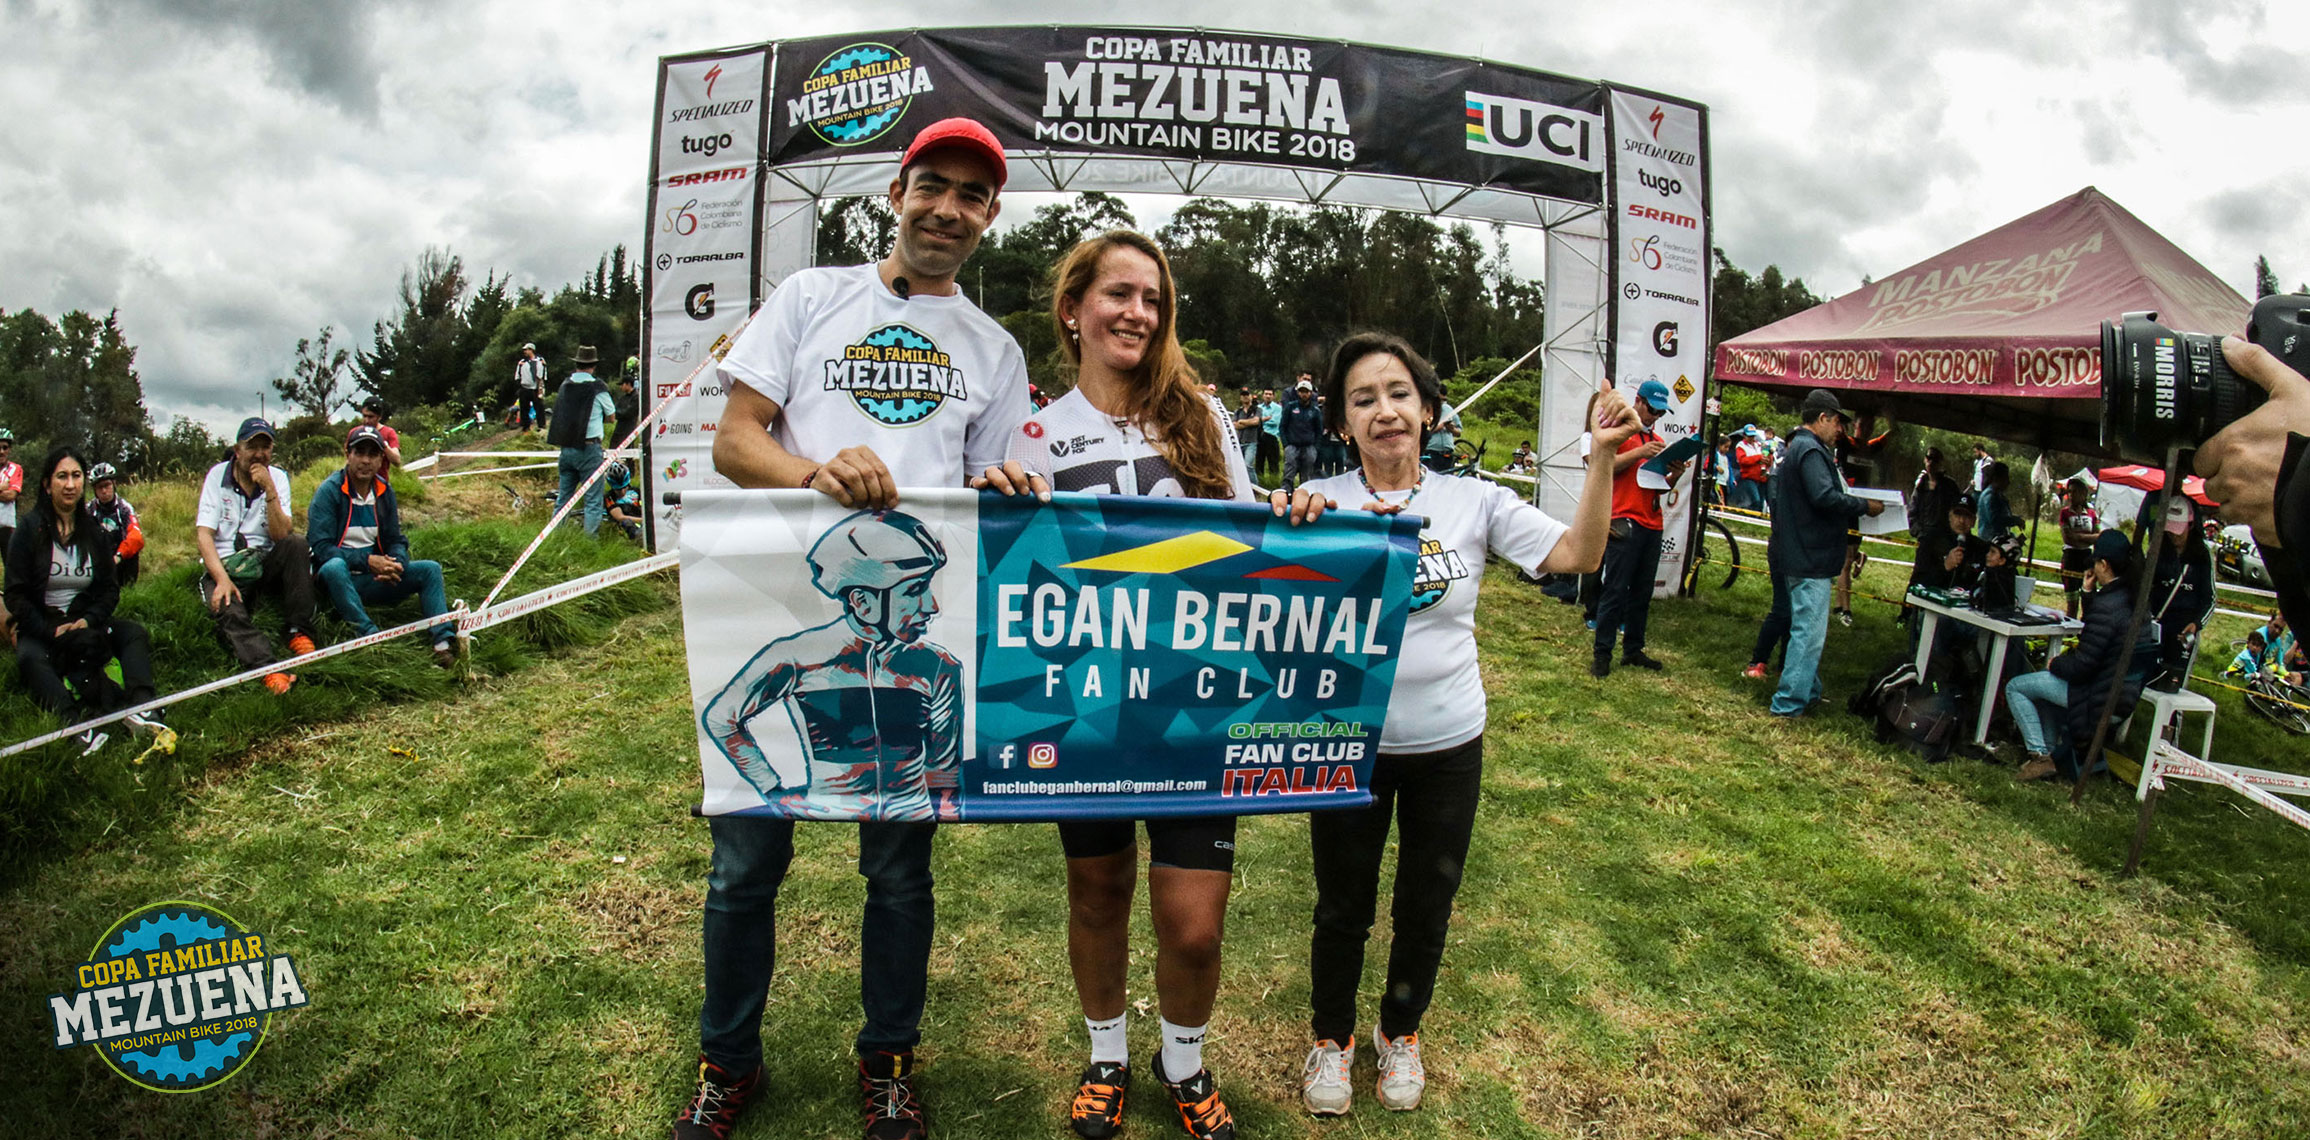 Anuncio de nueva colaboración de Egan Bernal y su Club de Fans Oficial con los proyectos de la Fundación Mezuena